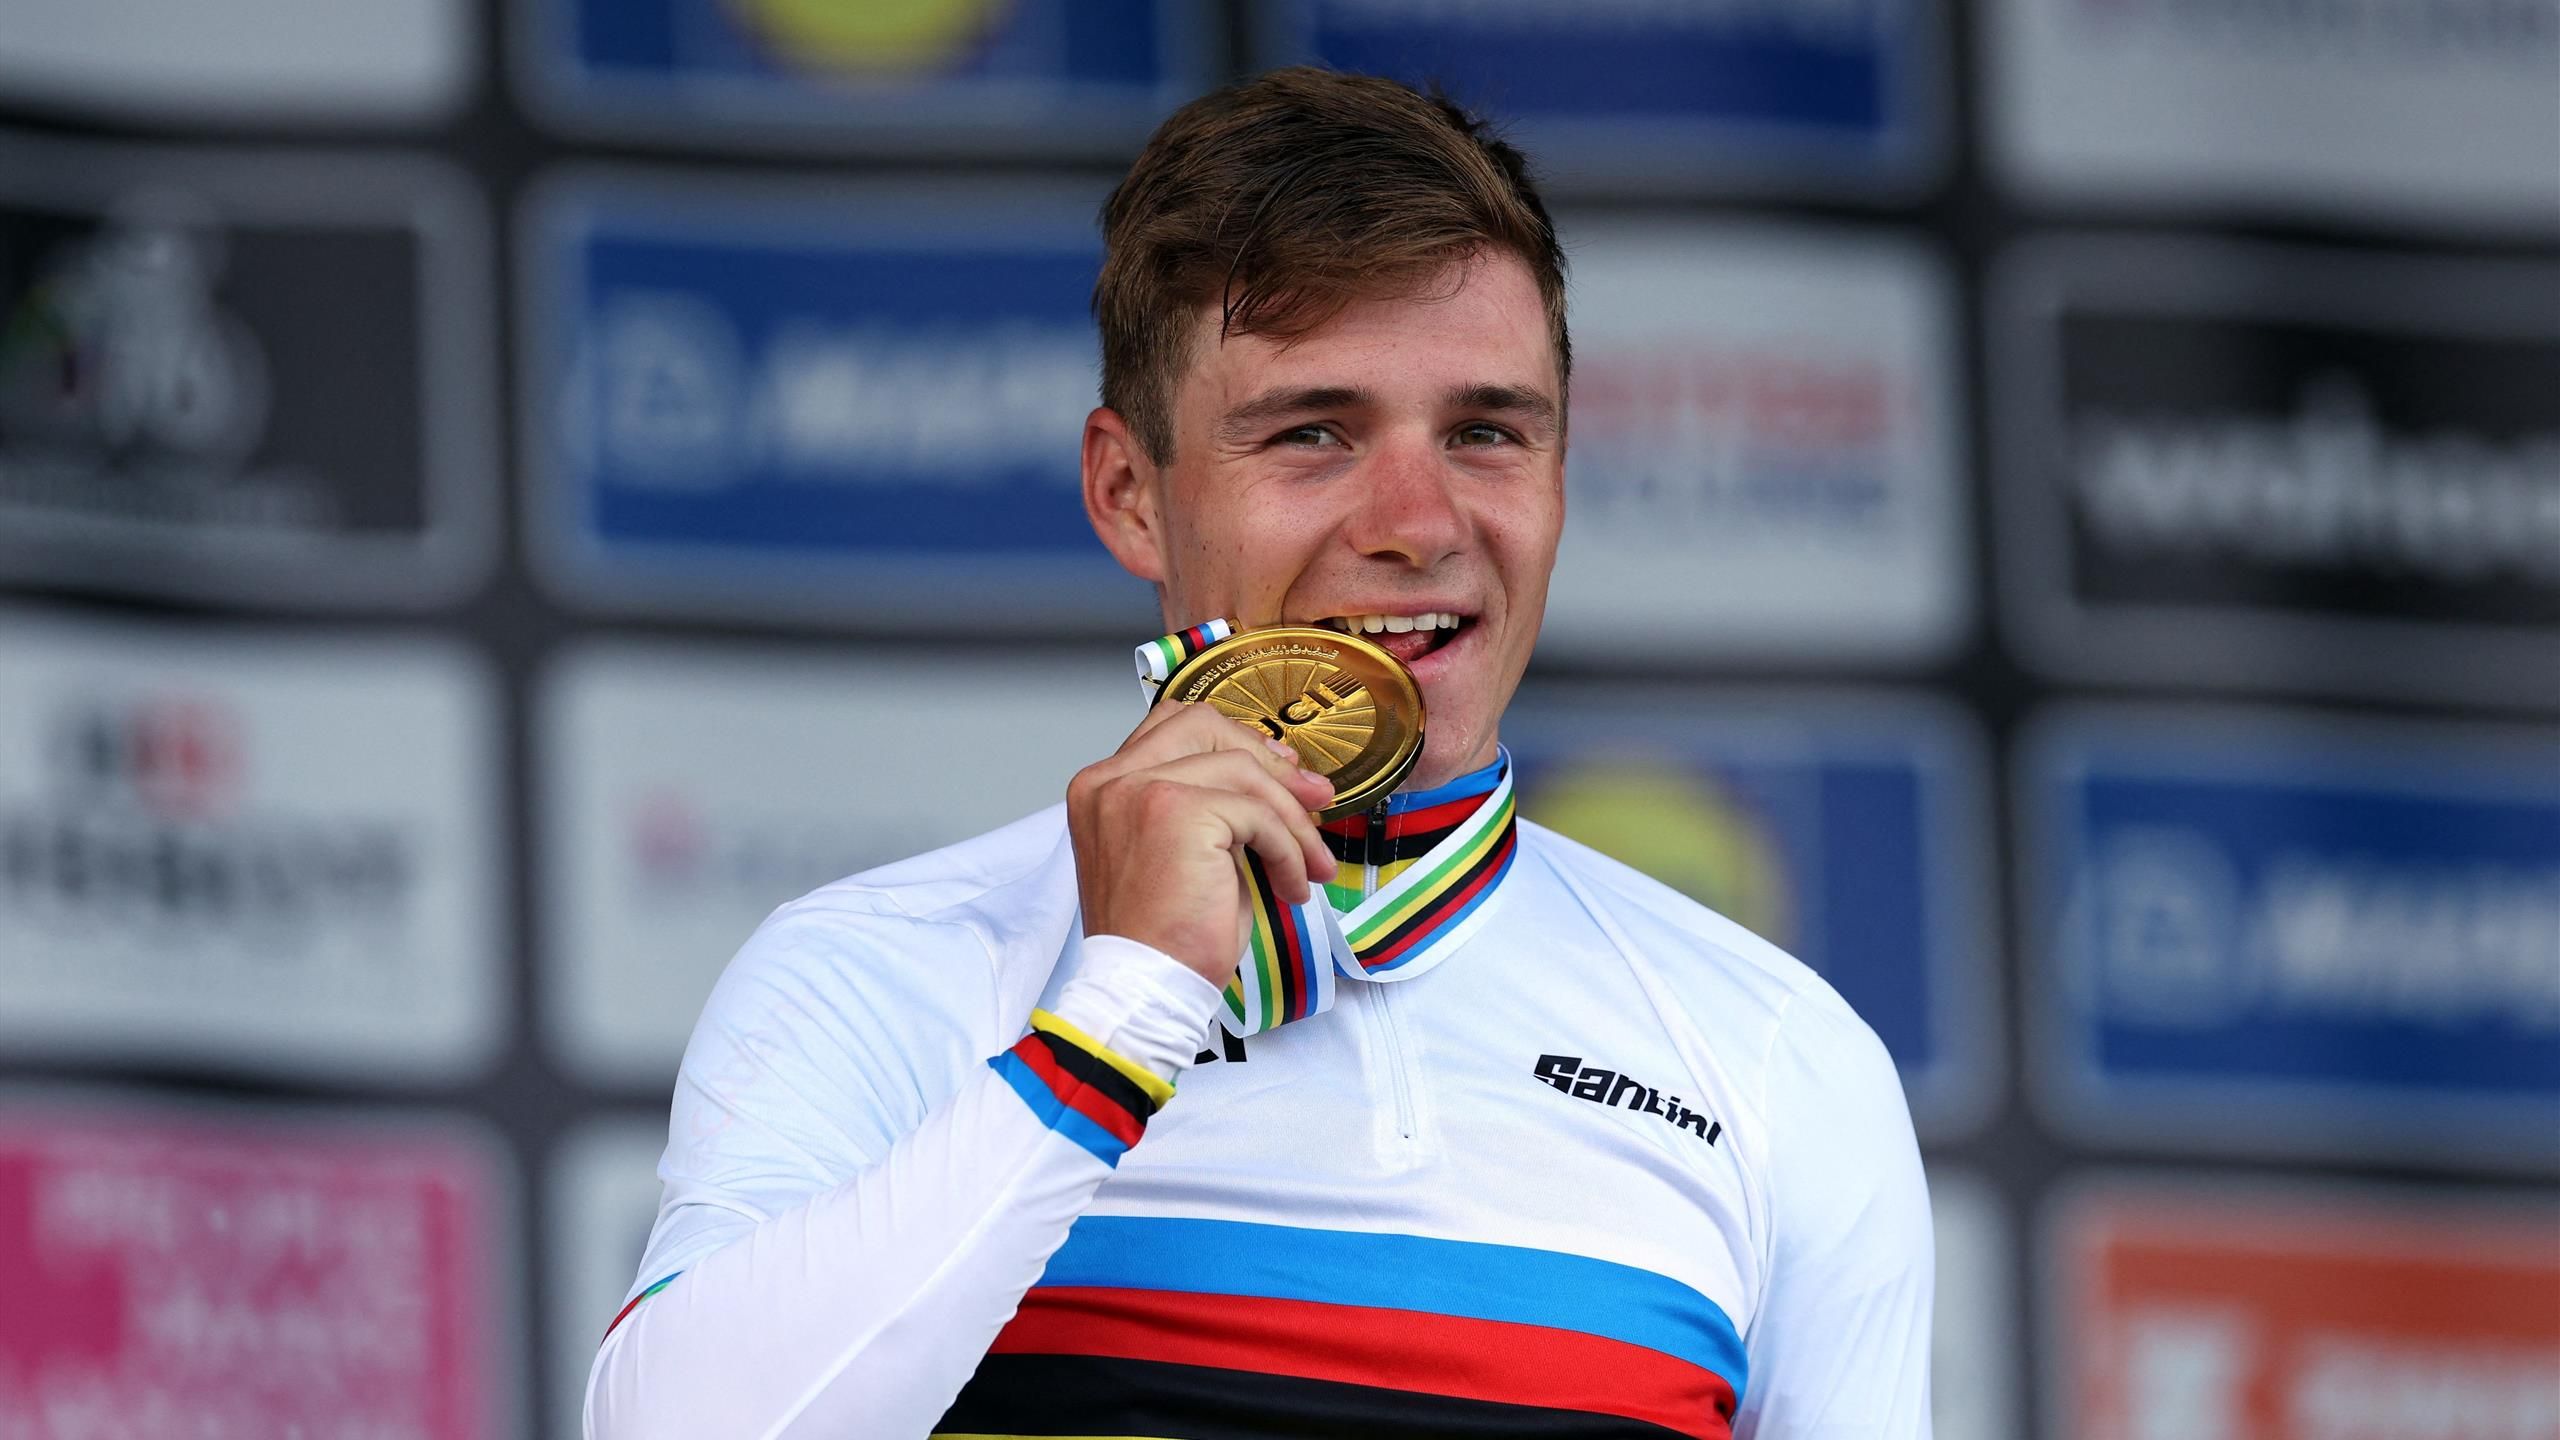 Copa del Mundo de Ciclismo 2023: Remco Evenpoel coronado campeón mundial de contrarreloj – El belga vence a Filippo Ganna